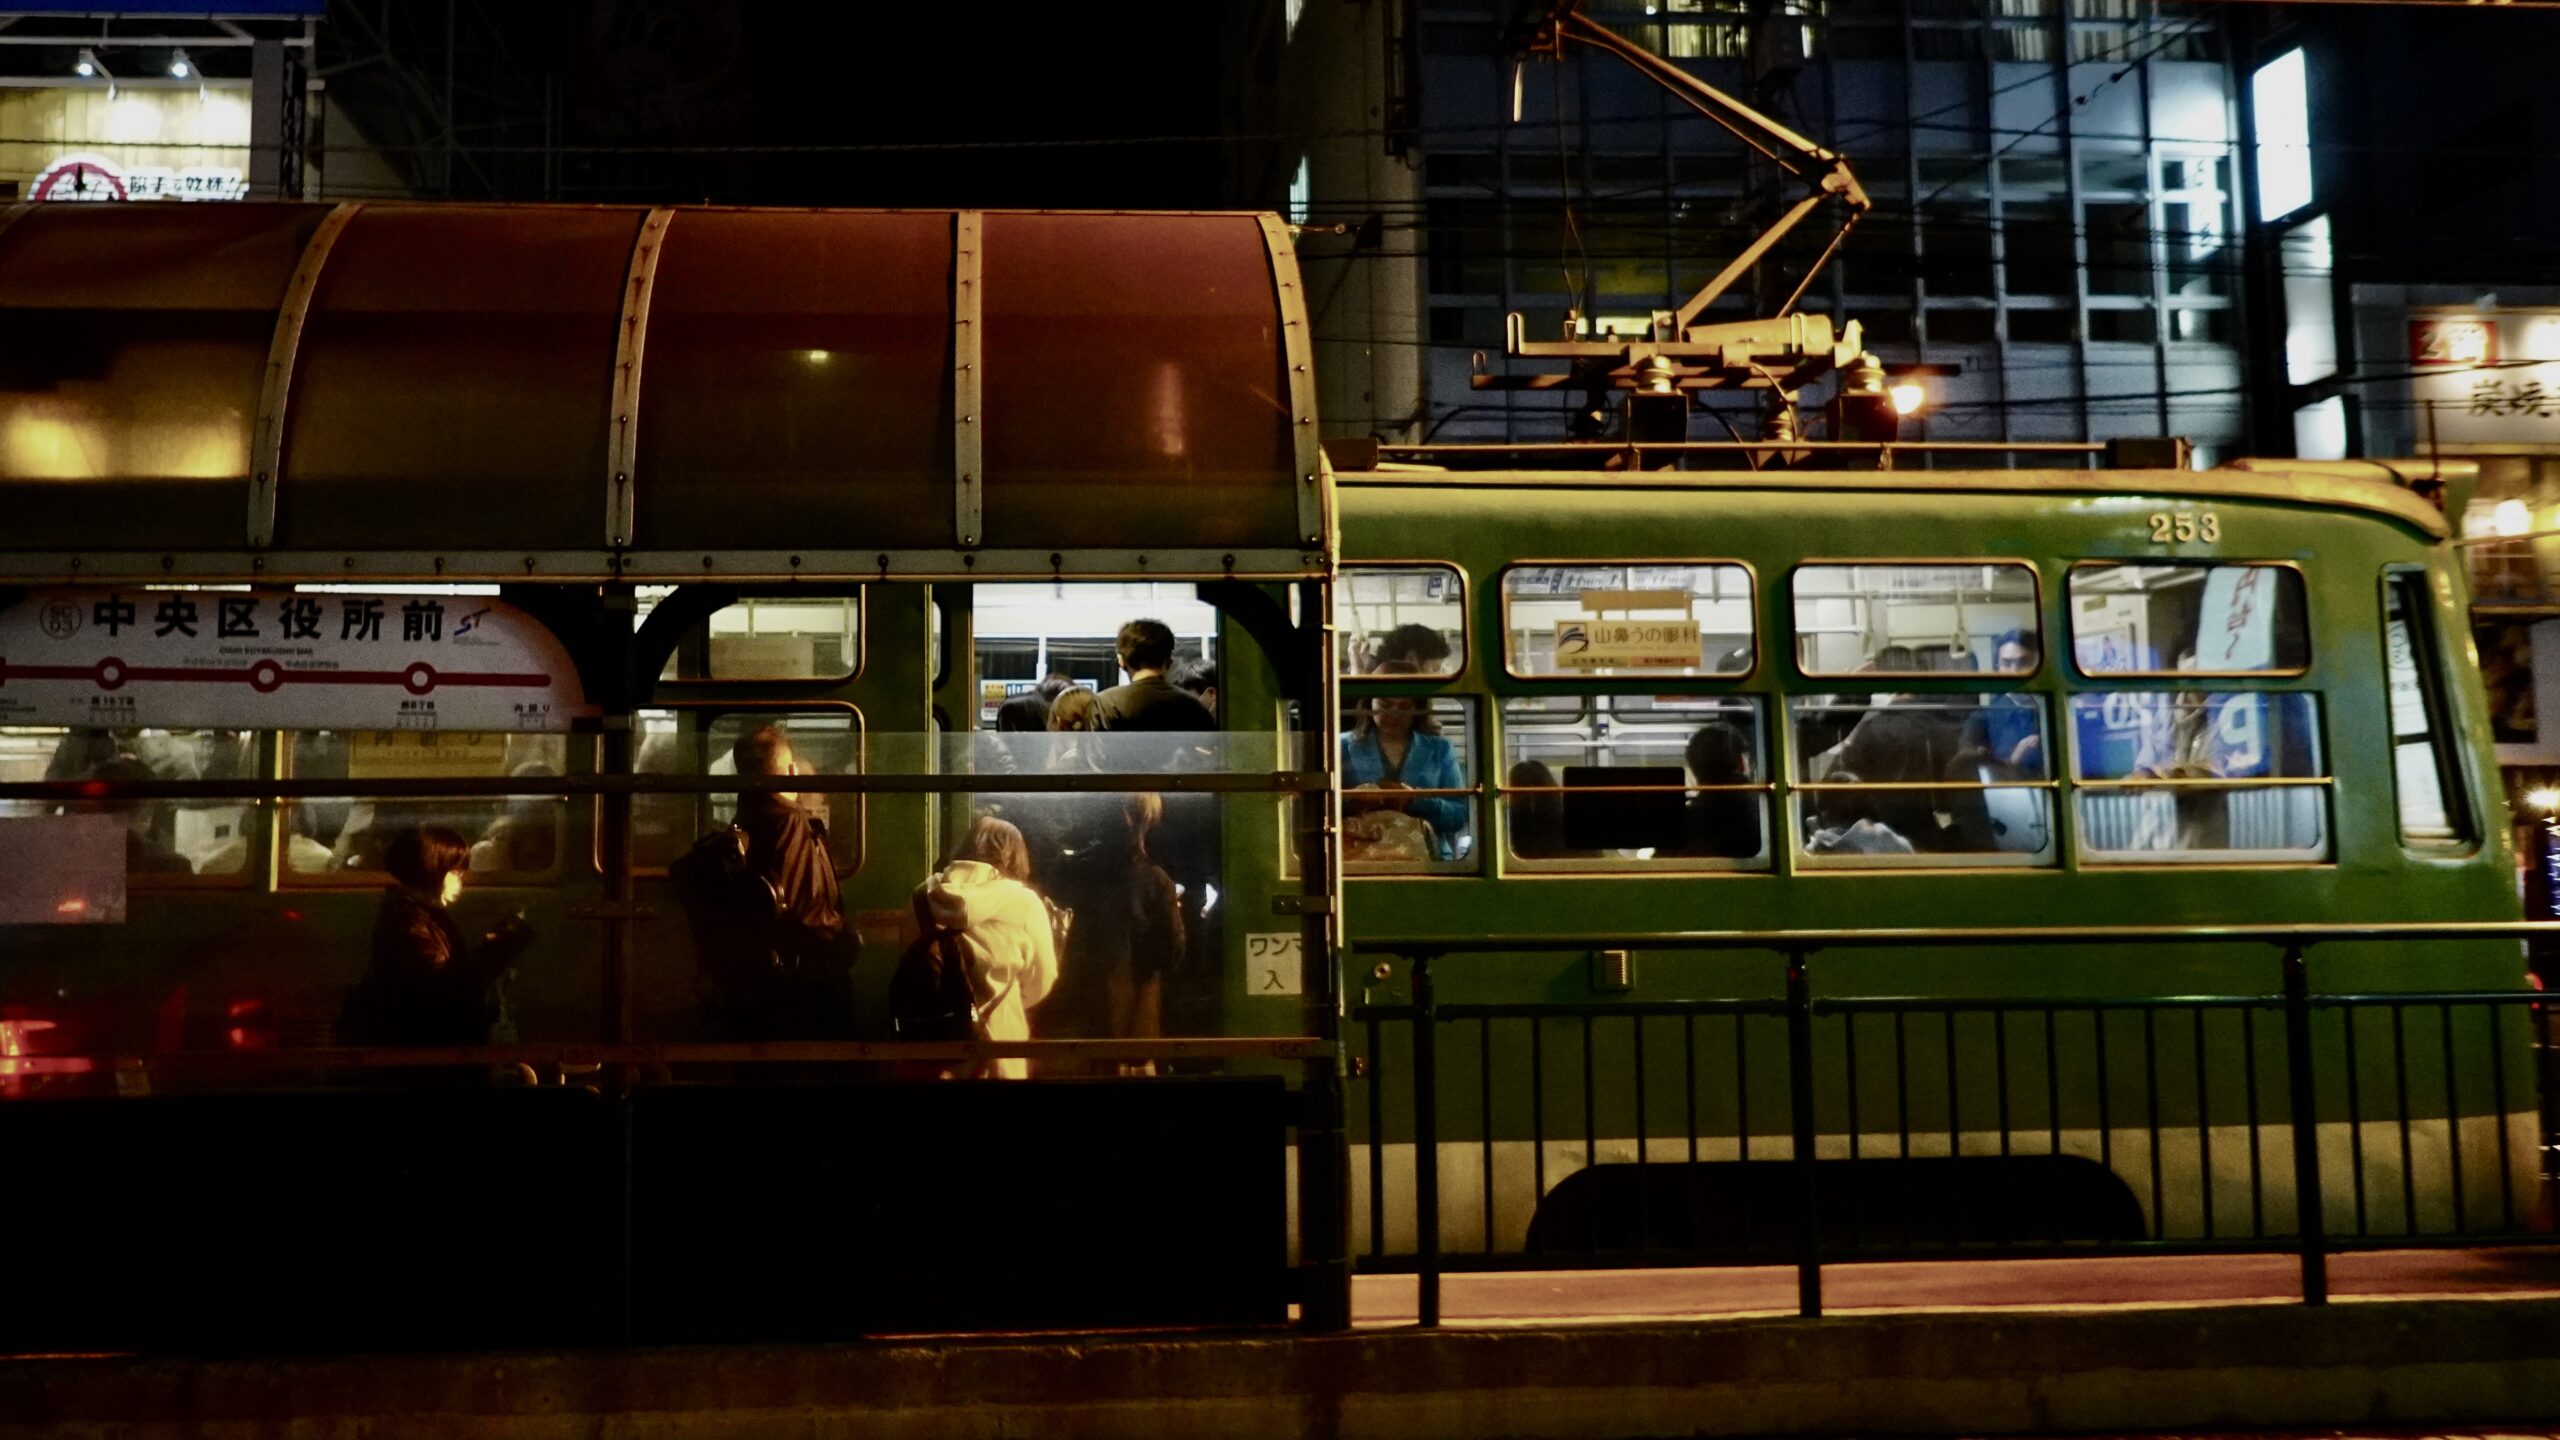 The Sapporo tram